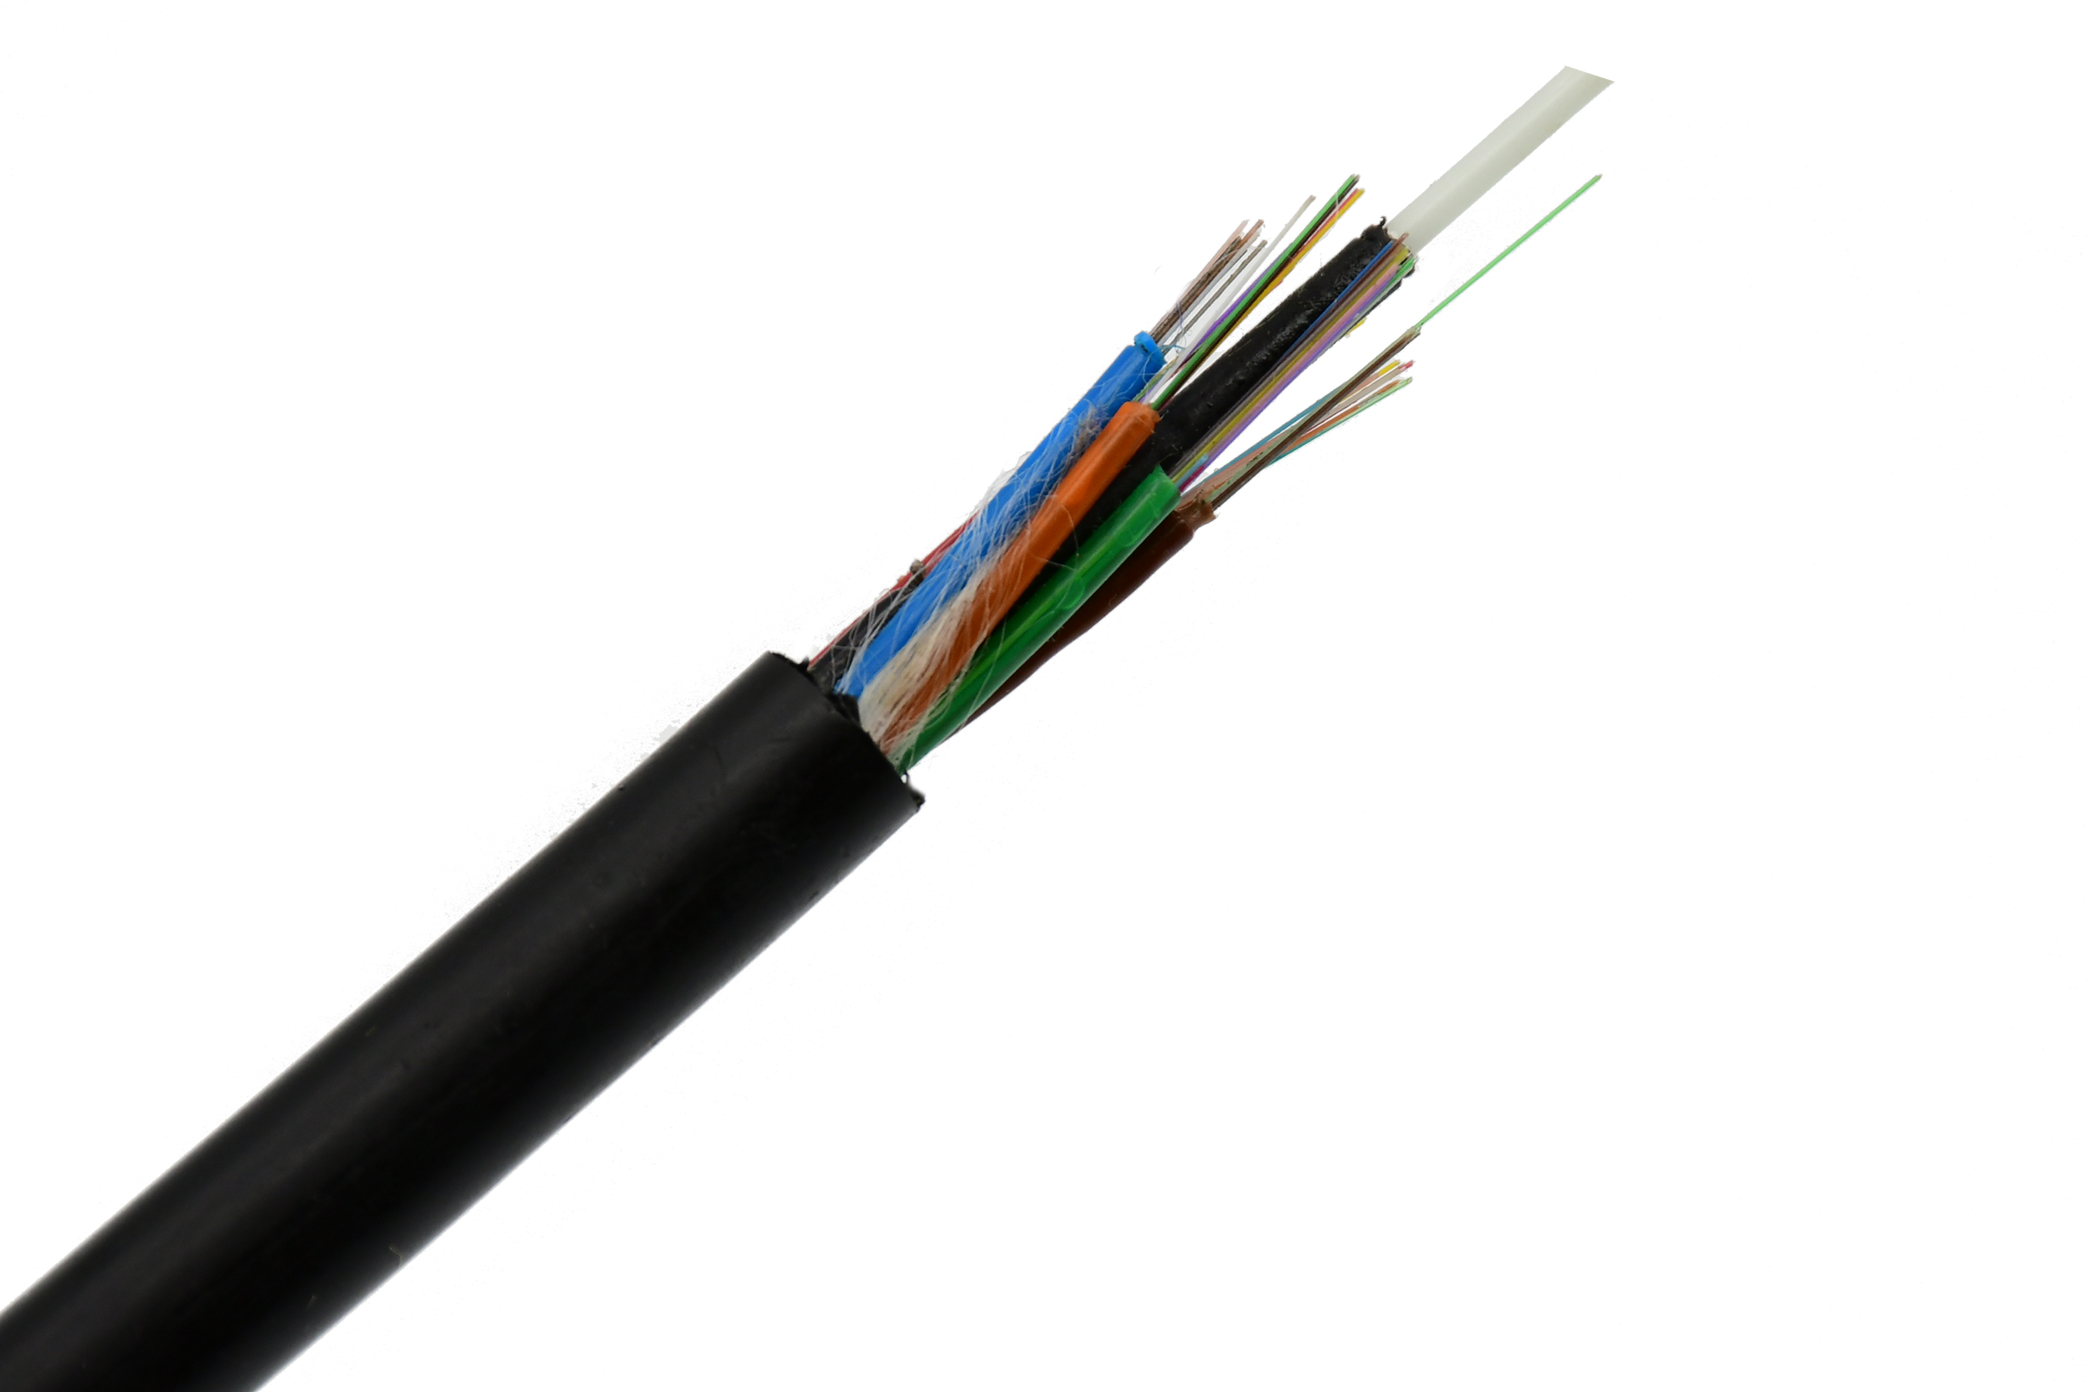 Conducto al aire libre Cable de fibra óptica GYFTY 24 núcleos monomodo G652D chaqueta no metálica PE negro